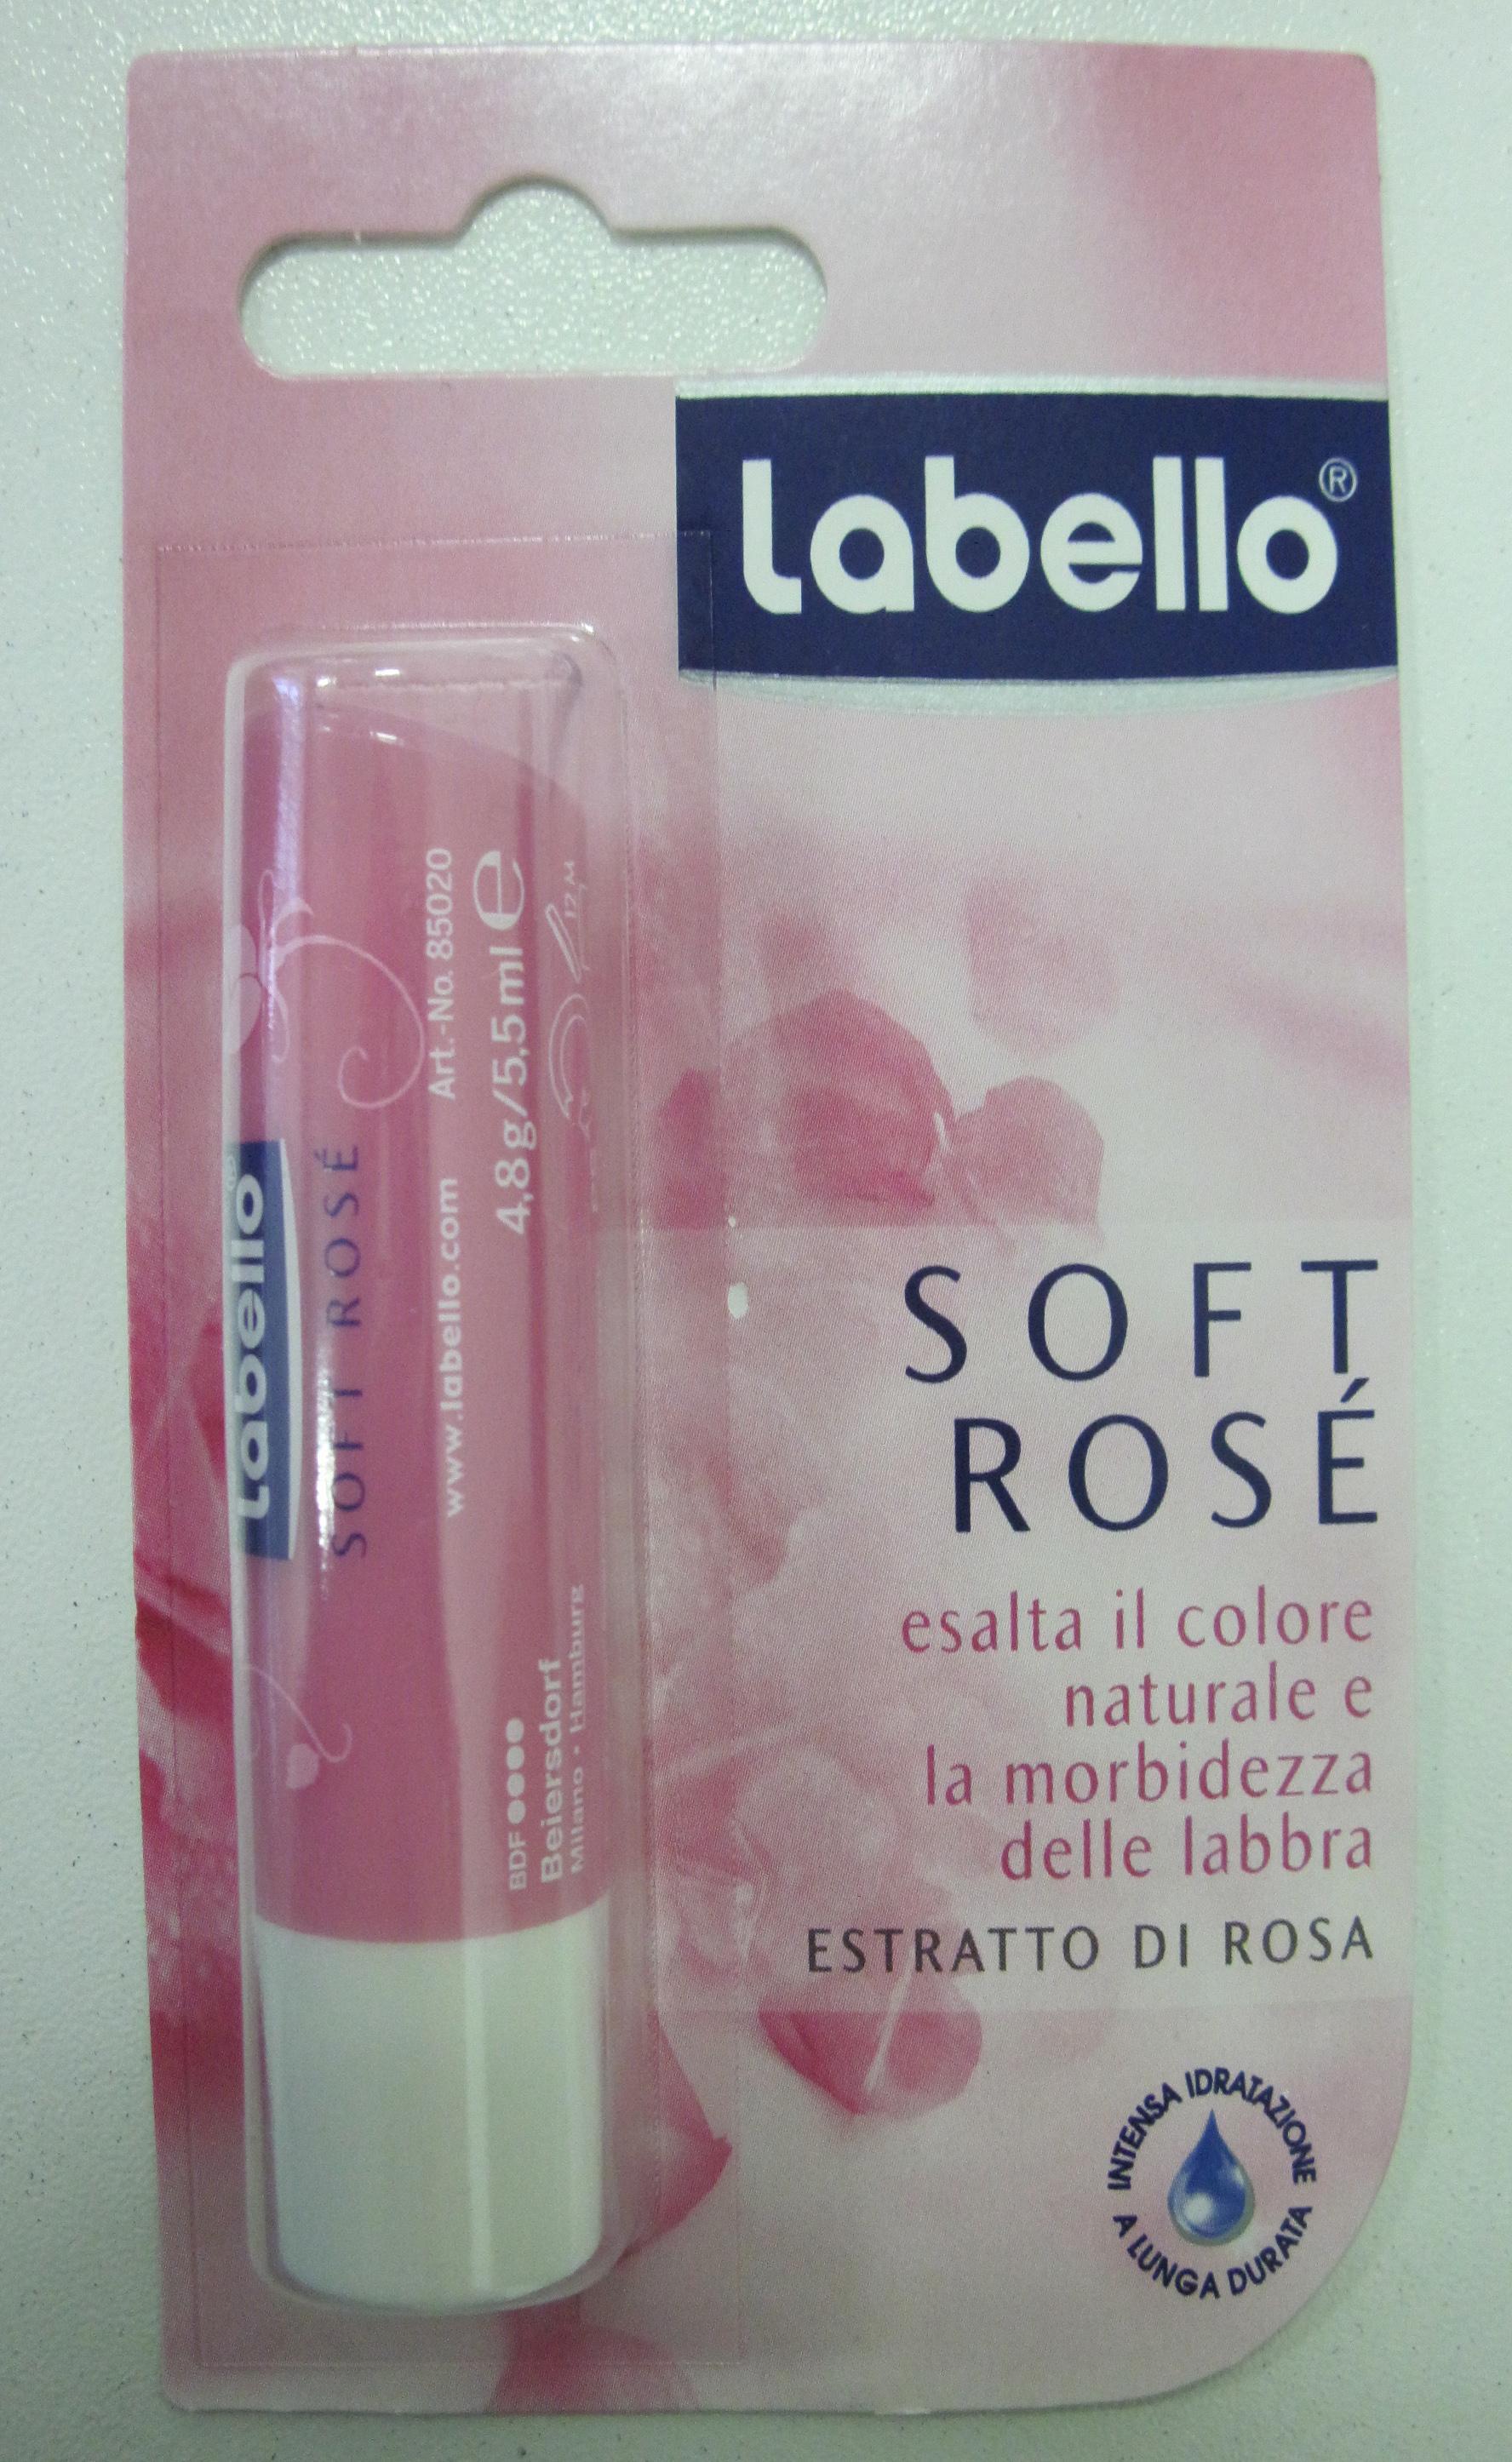 Labello Soft Rose Blisterverpakking